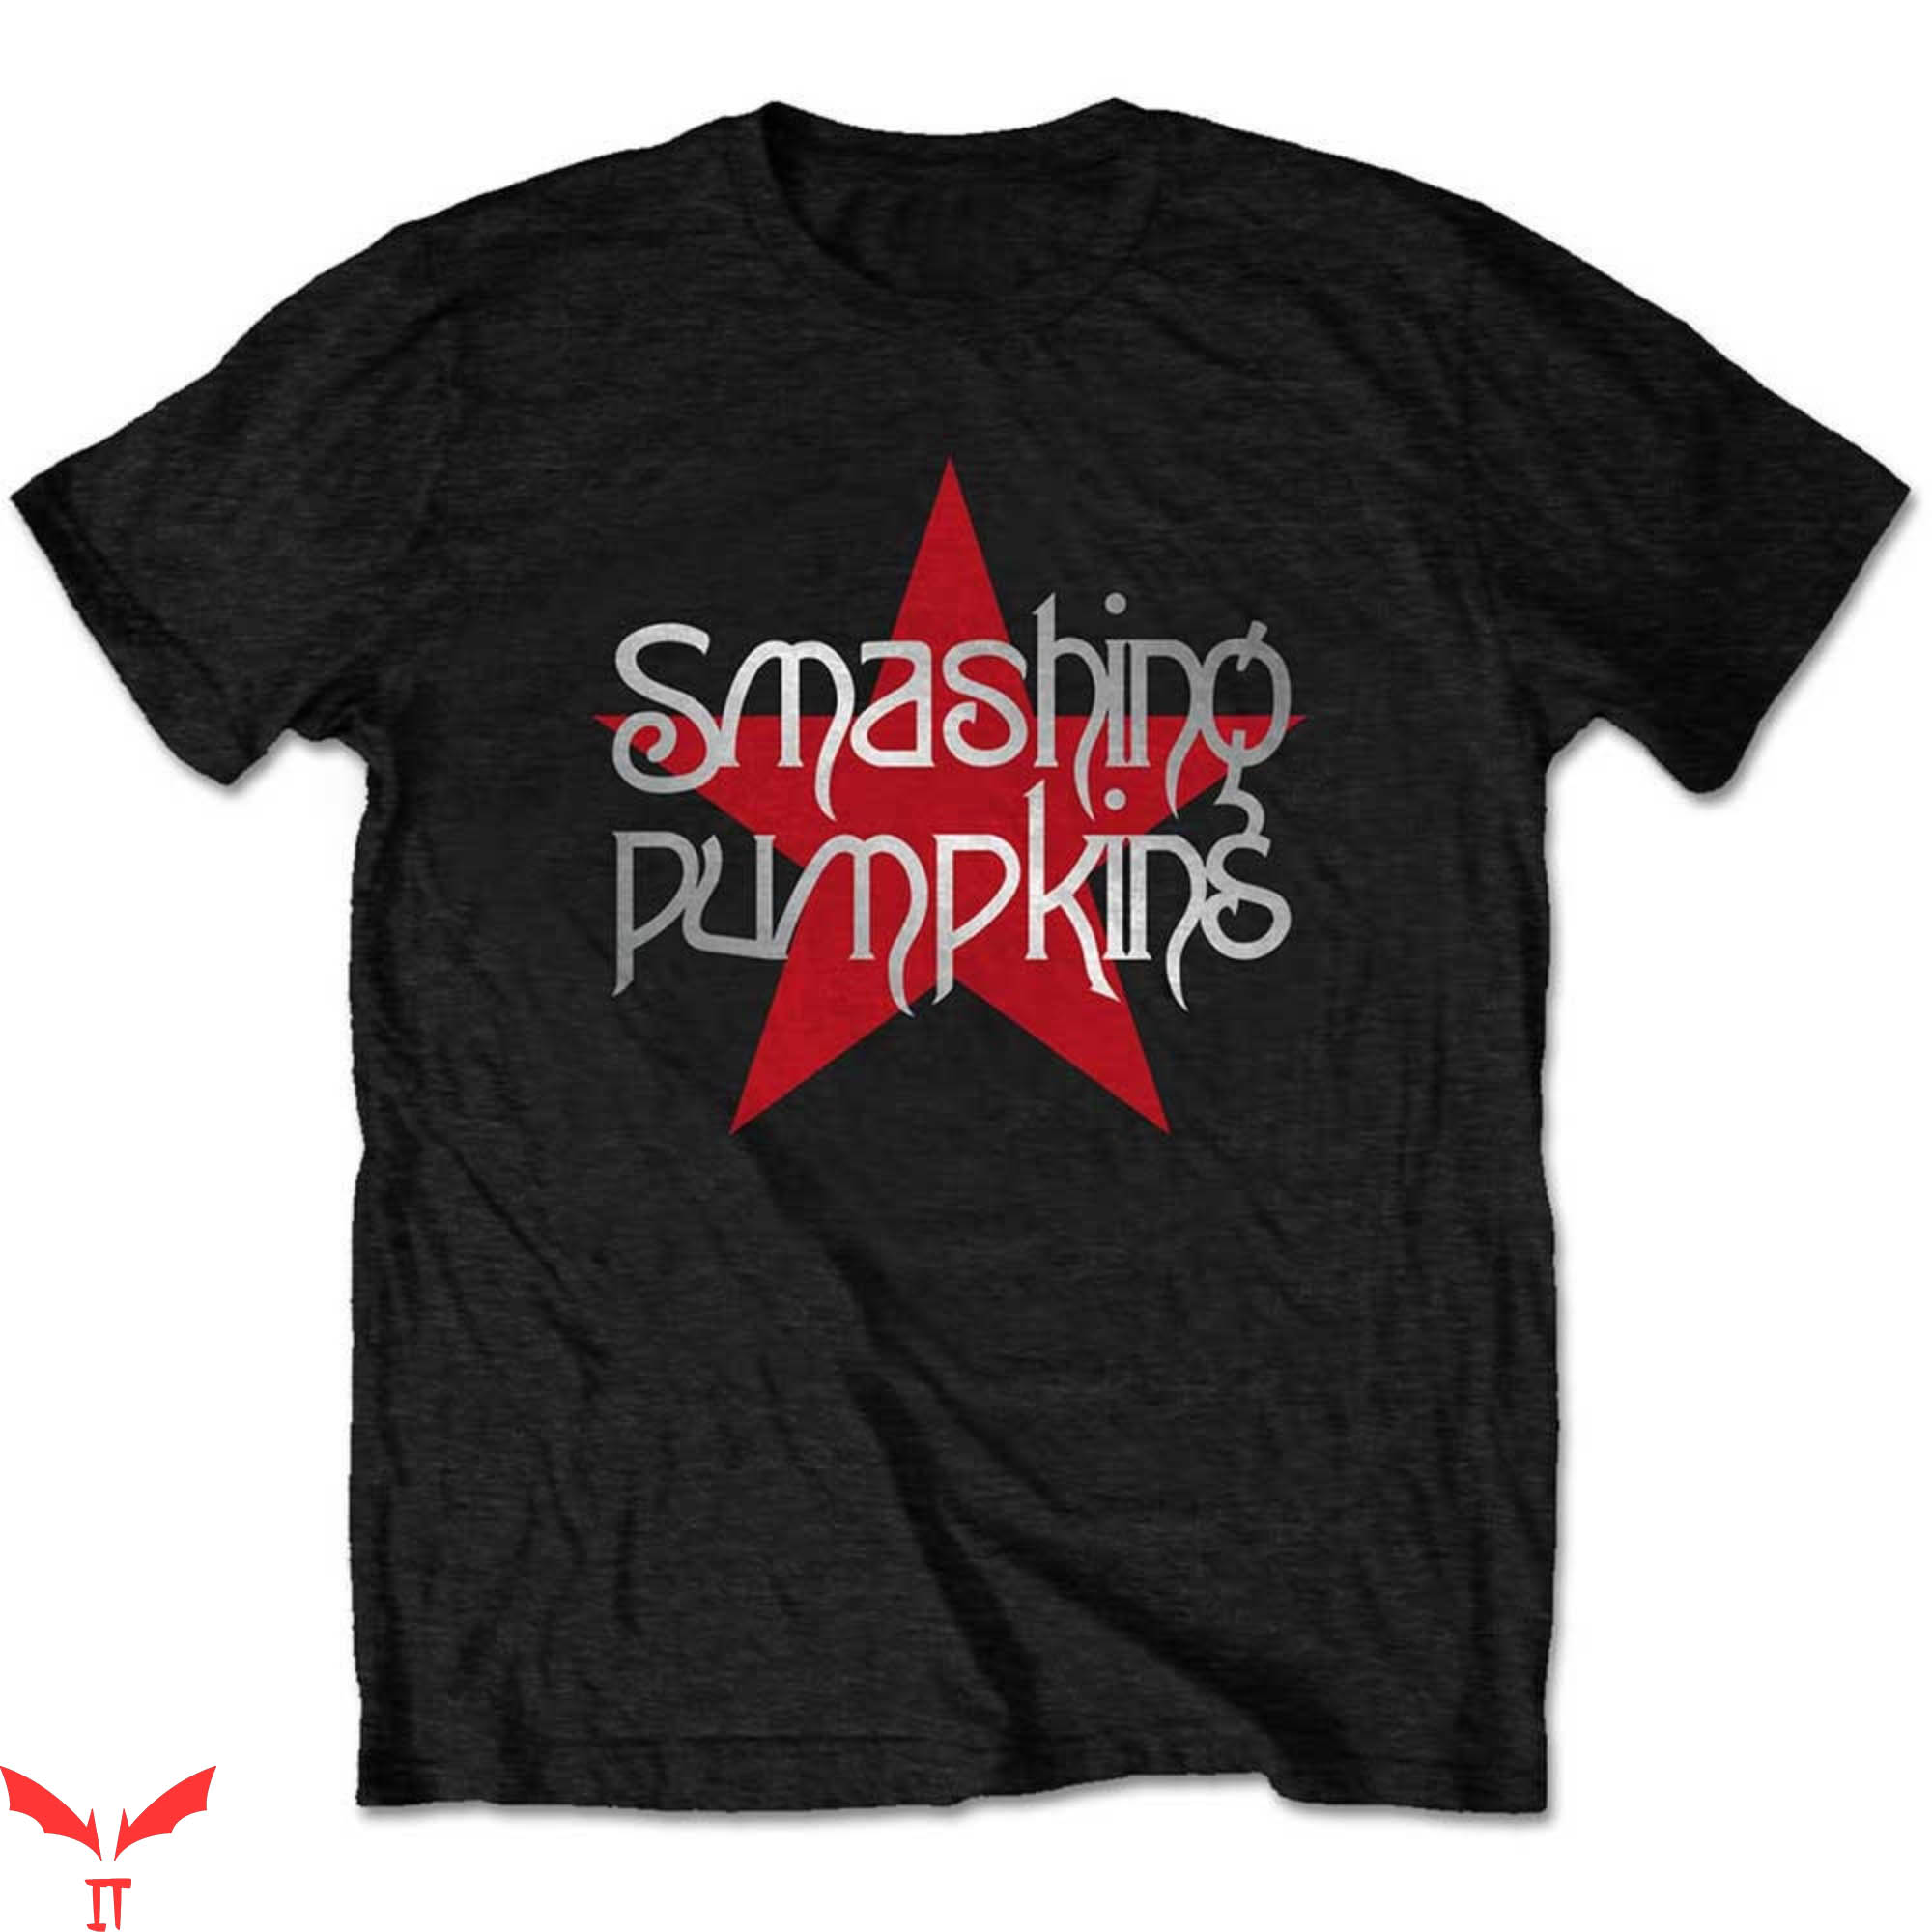 Siamese Dream T-Shirt The Smashing Pumpkins Star Logo